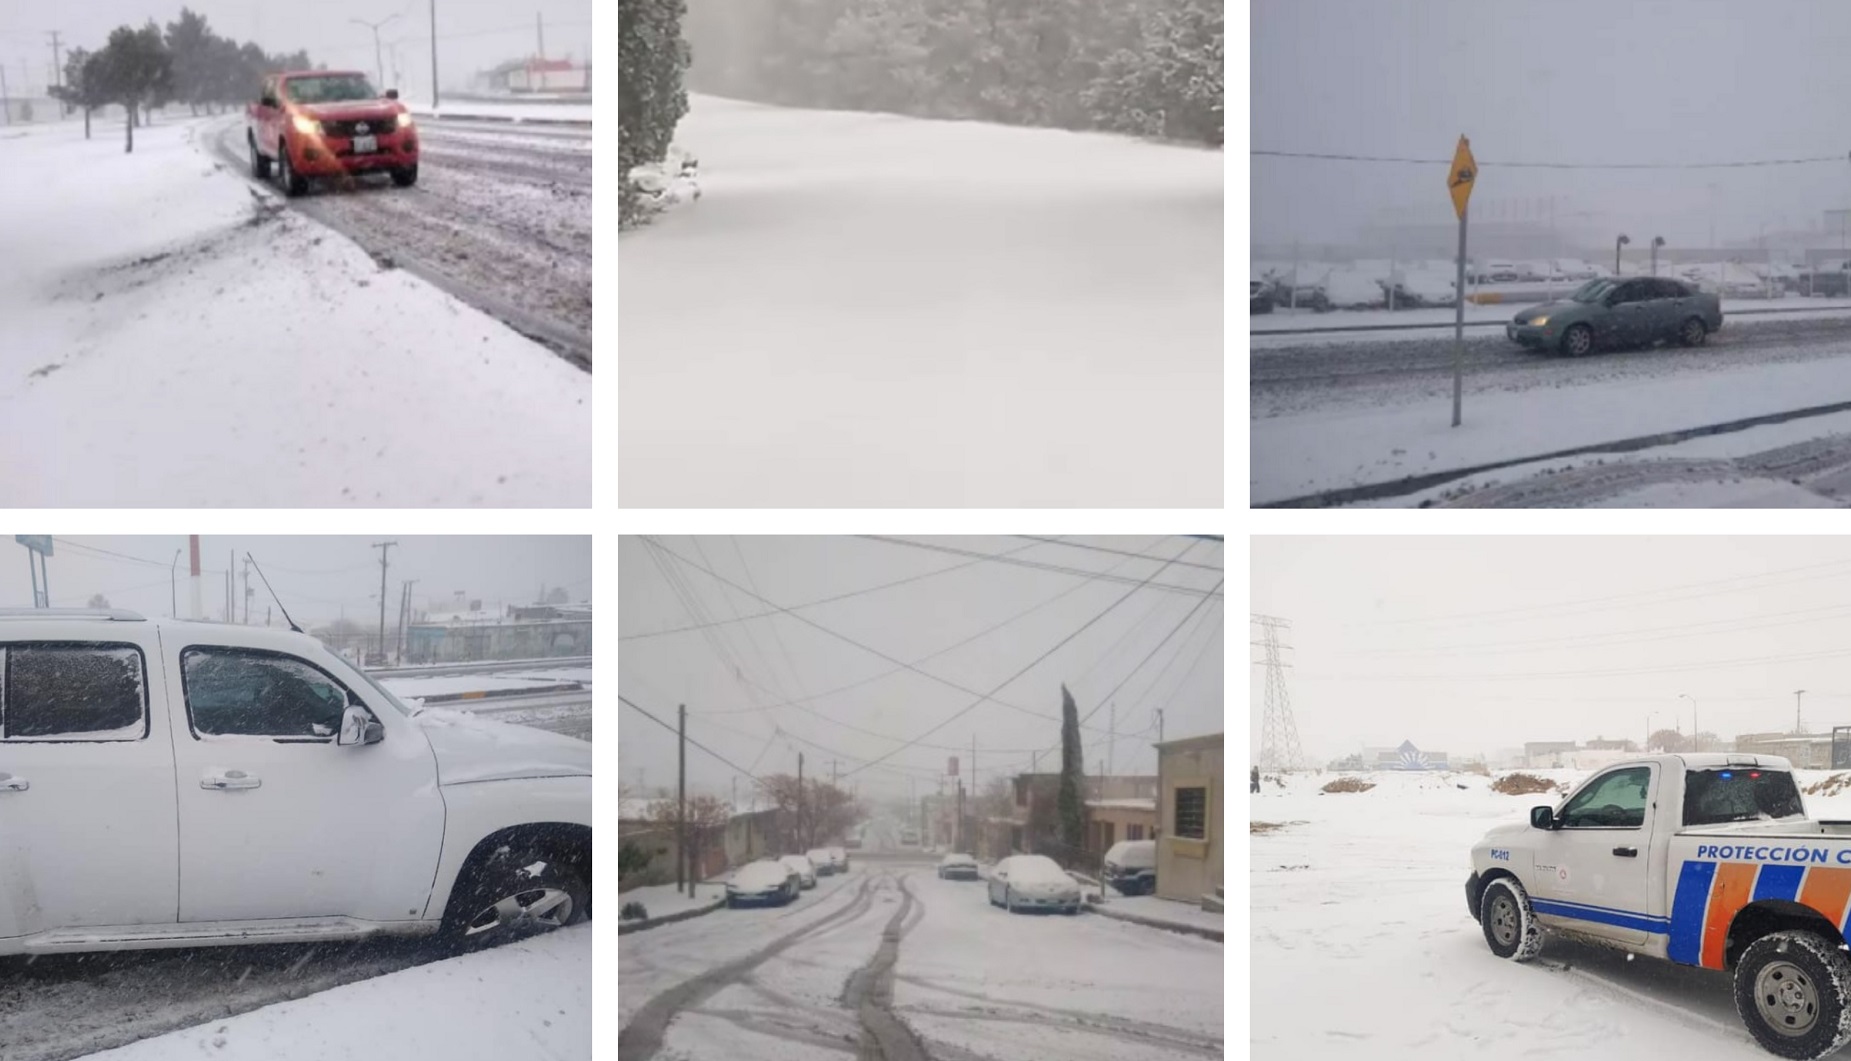 Imágenes de la nevada en Ciudad Juárez, el 14 de febrero (Foto: Facebook Coordinacion Estatal de Protección Civil de Chihuahua @PCreportedeldia)